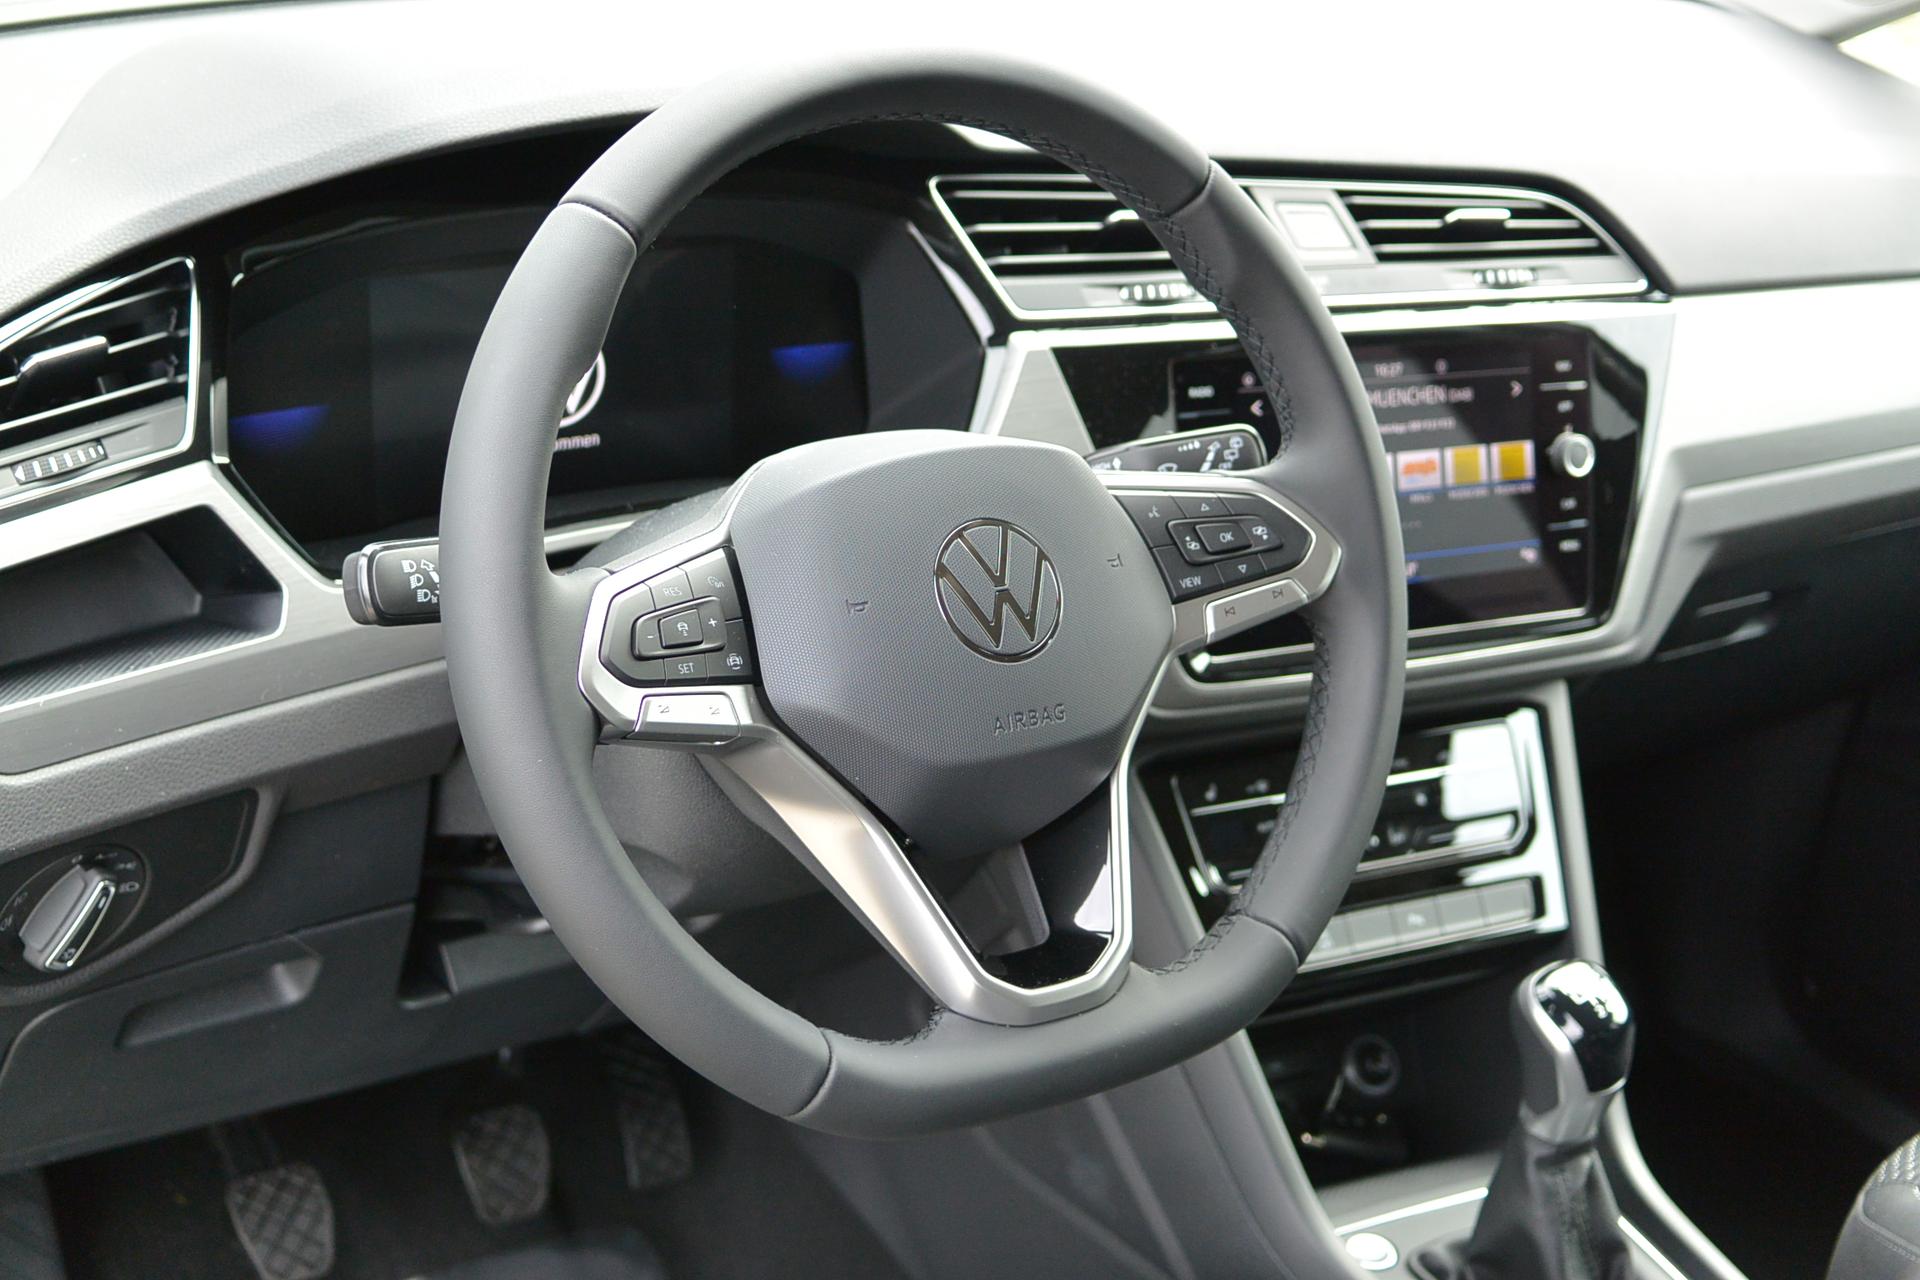 VW Touran Uranograu Reimport EU-Neuwagen nahe München